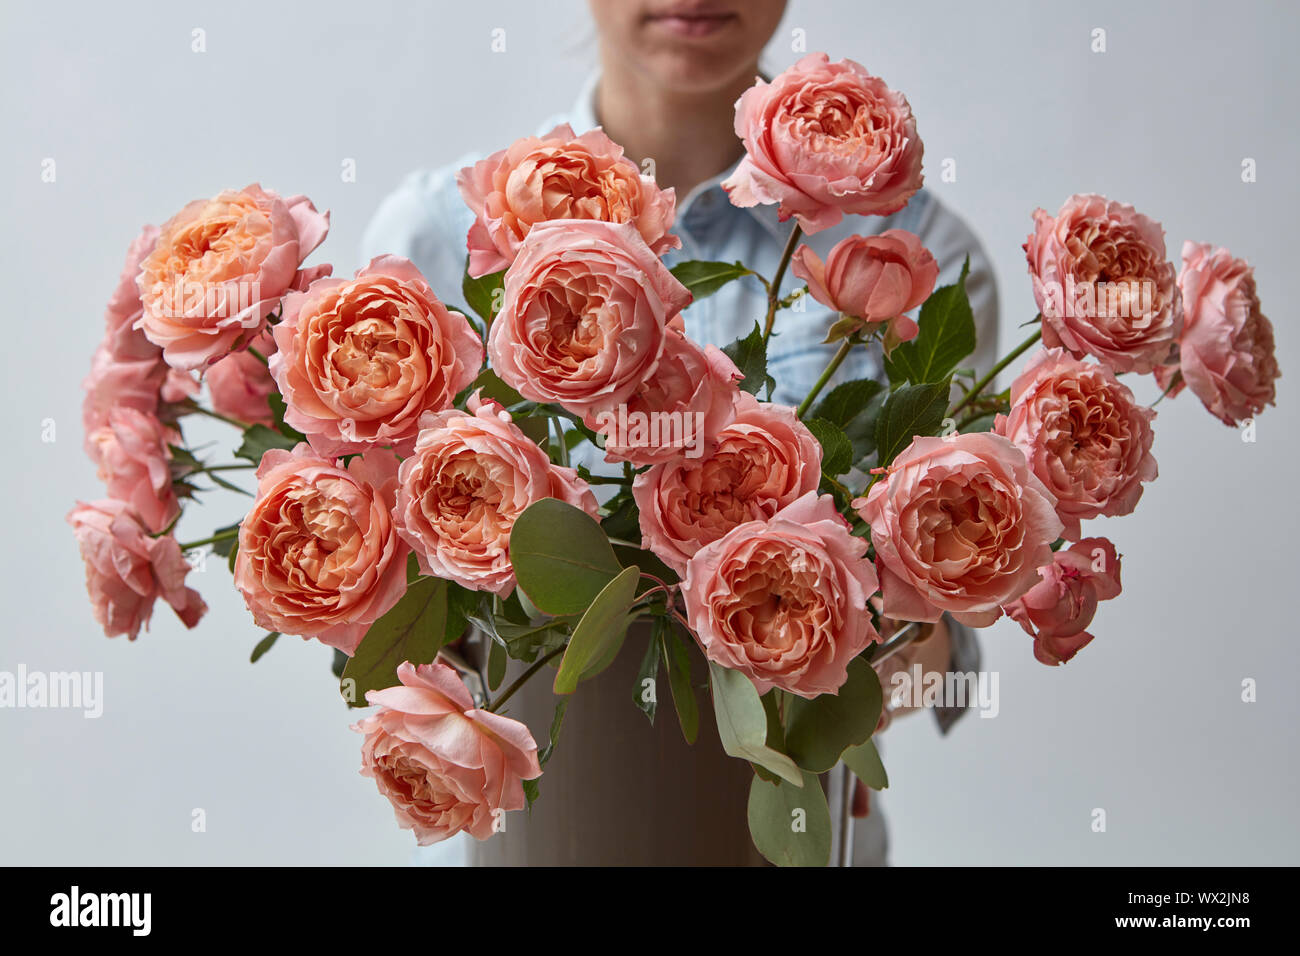 Ein Mädchen hält eine schöne rosa Rosen um einen grauen Hintergrund. Grußkarte Stockfoto